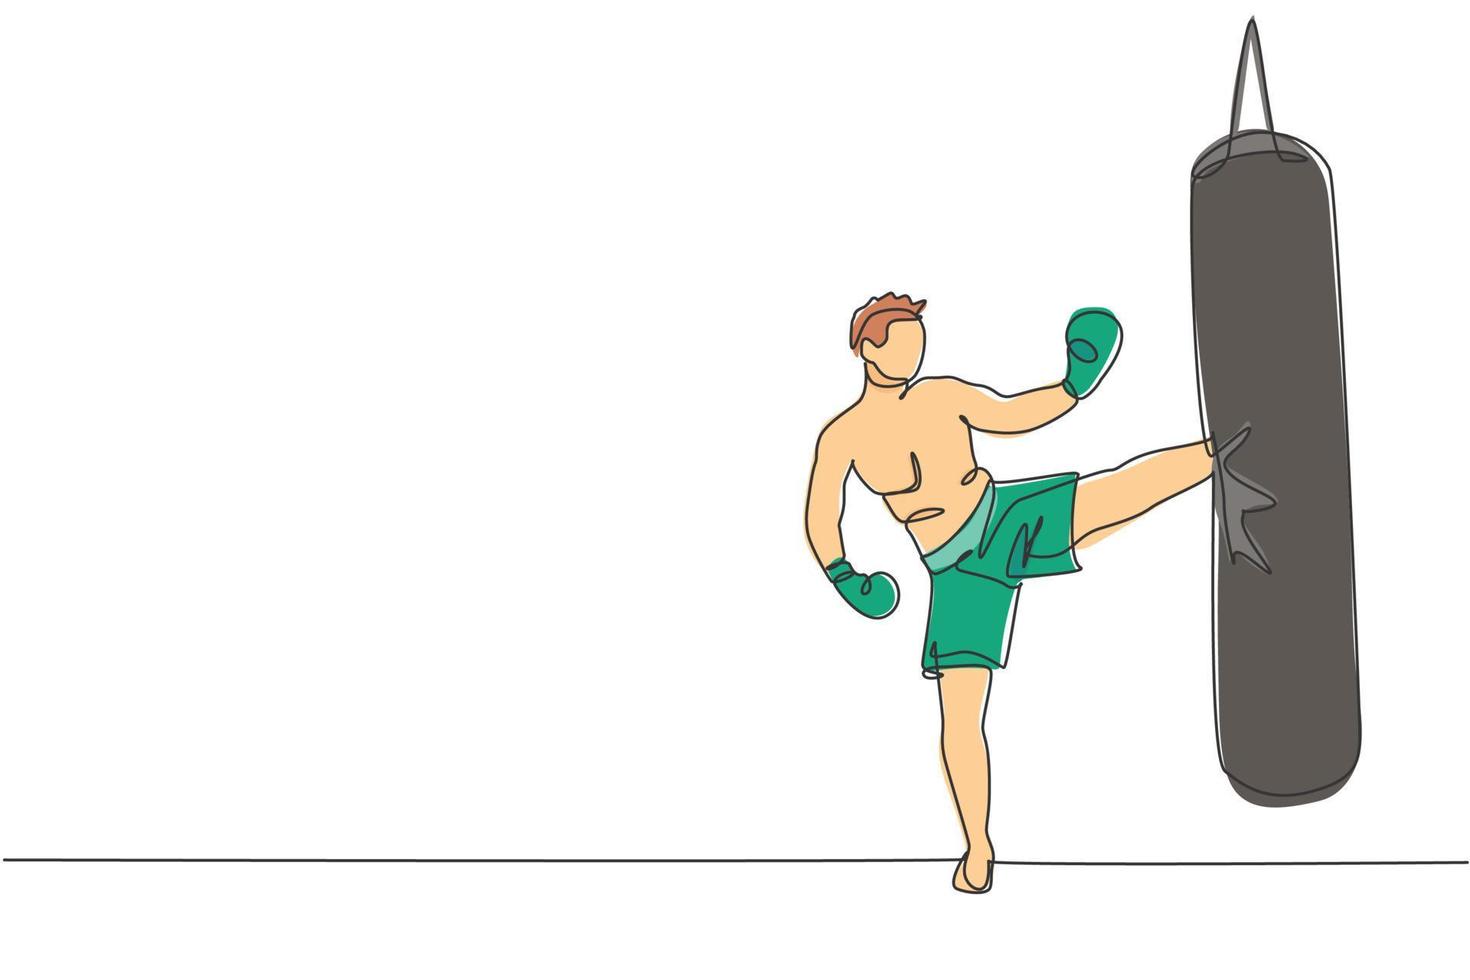 singolo disegno a linea continua di un giovane sportivo kickboxer esercizio laterale calci con sacco da boxe nella palestra. combattere il concetto di sport di kickboxing da competizione. illustrazione vettoriale di un disegno di linea